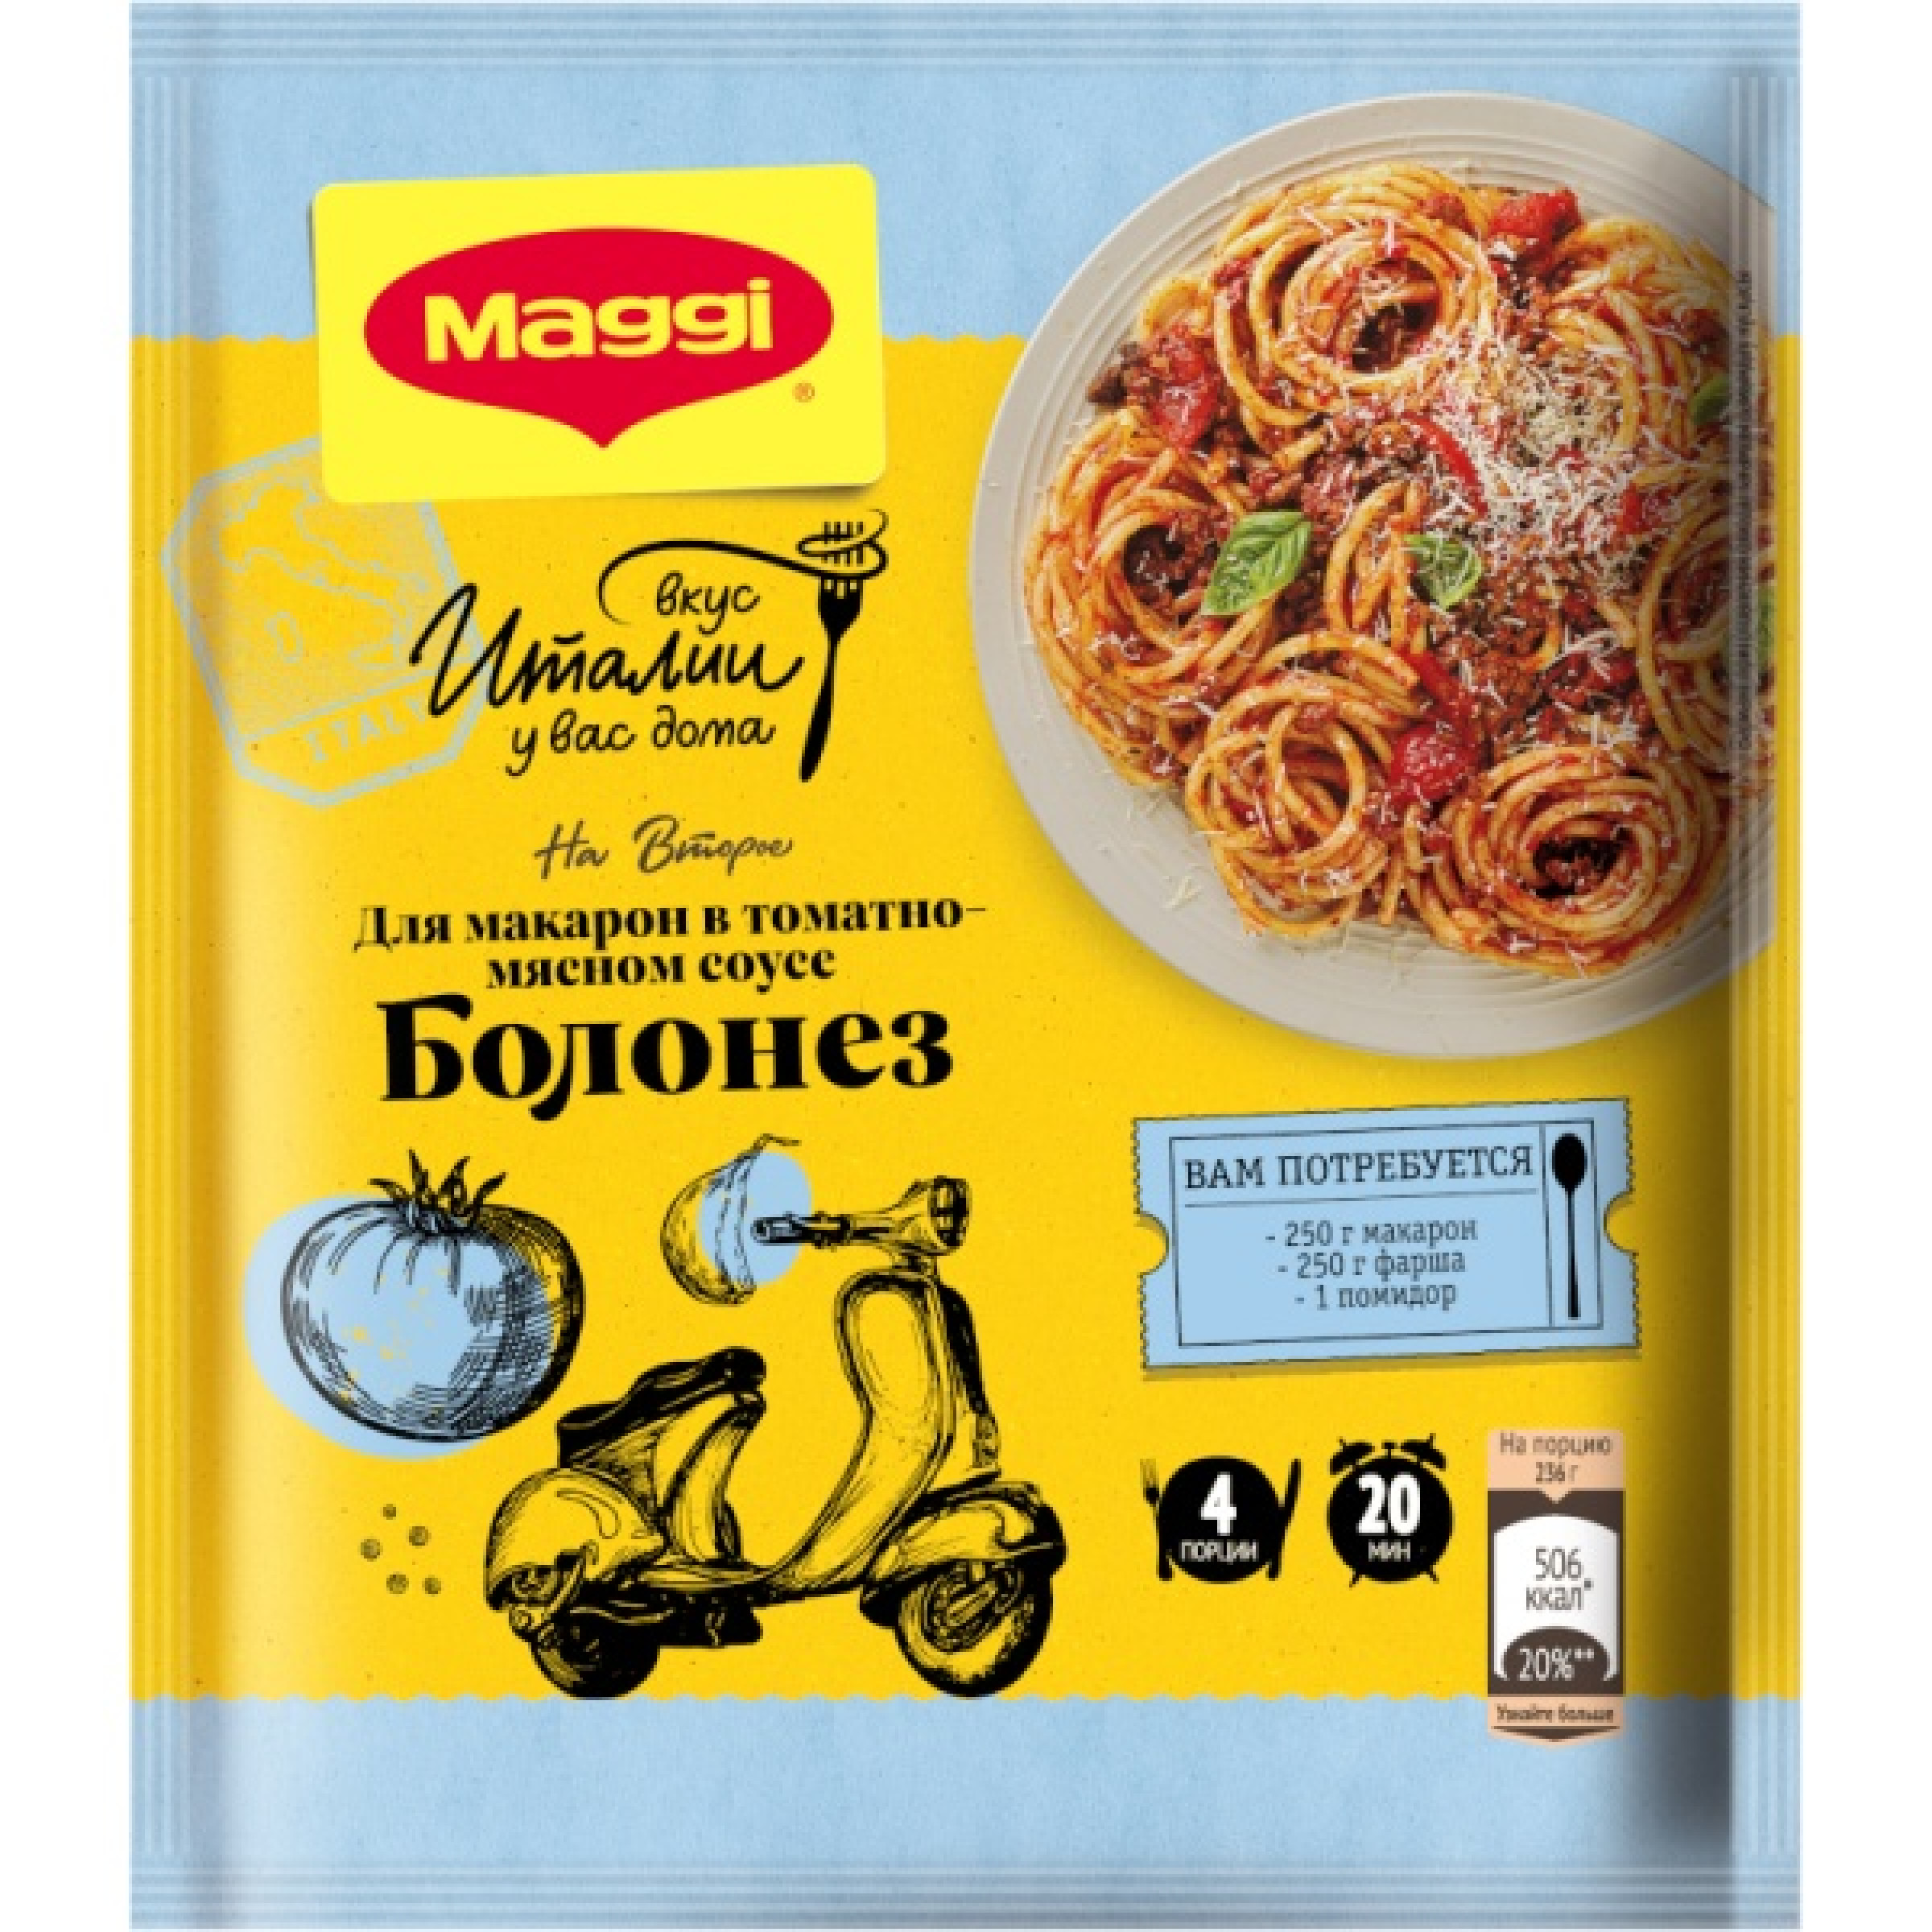 MAGGI ® на второе Болонез для приготовления макарон в томатно-мясном соусе, 30 г